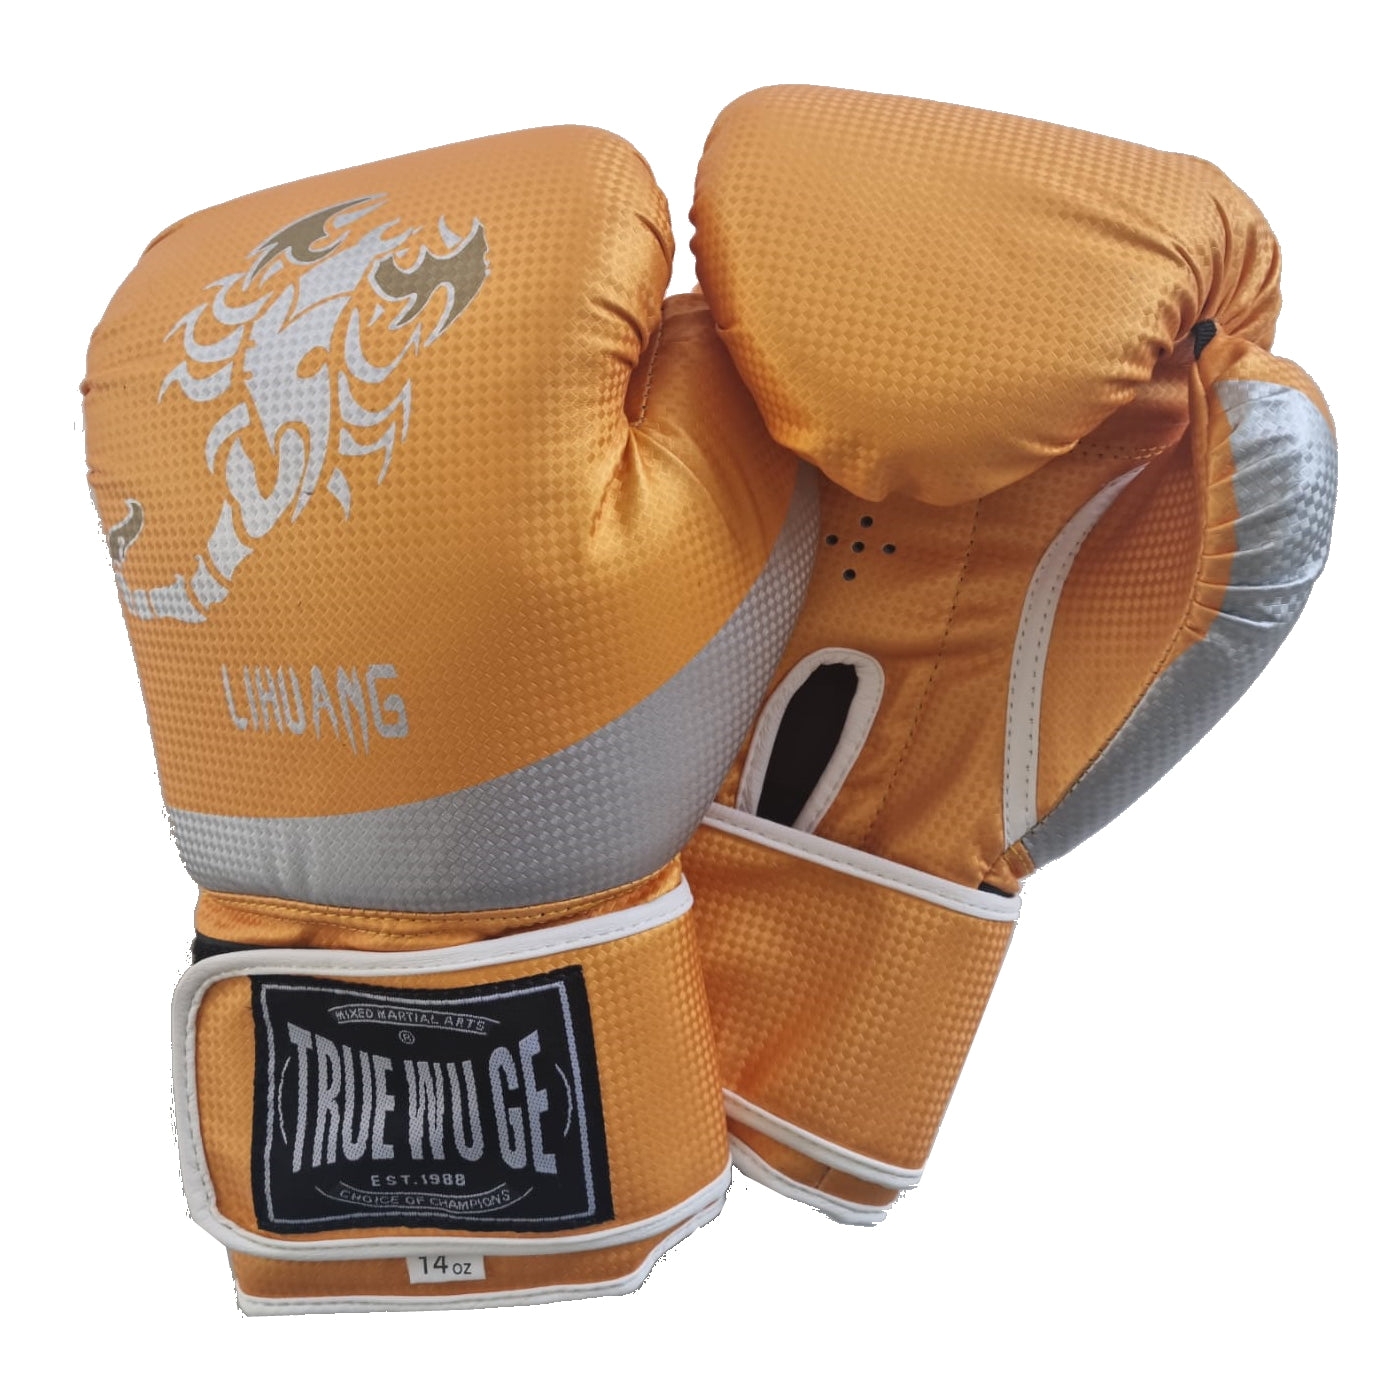 Boxing Gloves (Pair) | Fitness Equipment Dublin 14oz / Orange